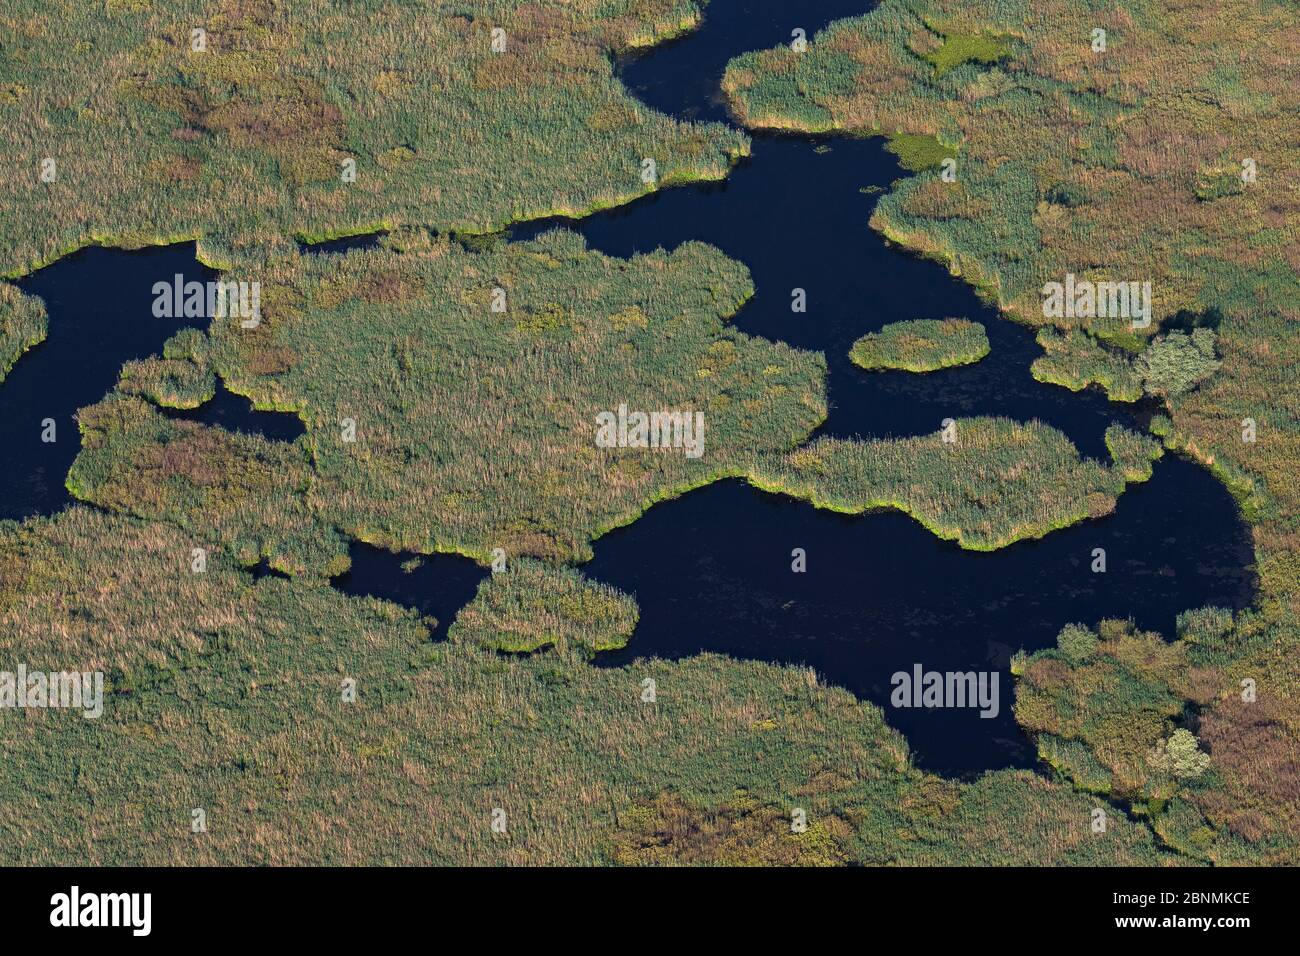 Vue aérienne du delta du Danube, deuxième plus grande zone humide d'Europe et le plus grand lit de roseaux du monde, avec des îles de roseaux, la Roumanie Banque D'Images